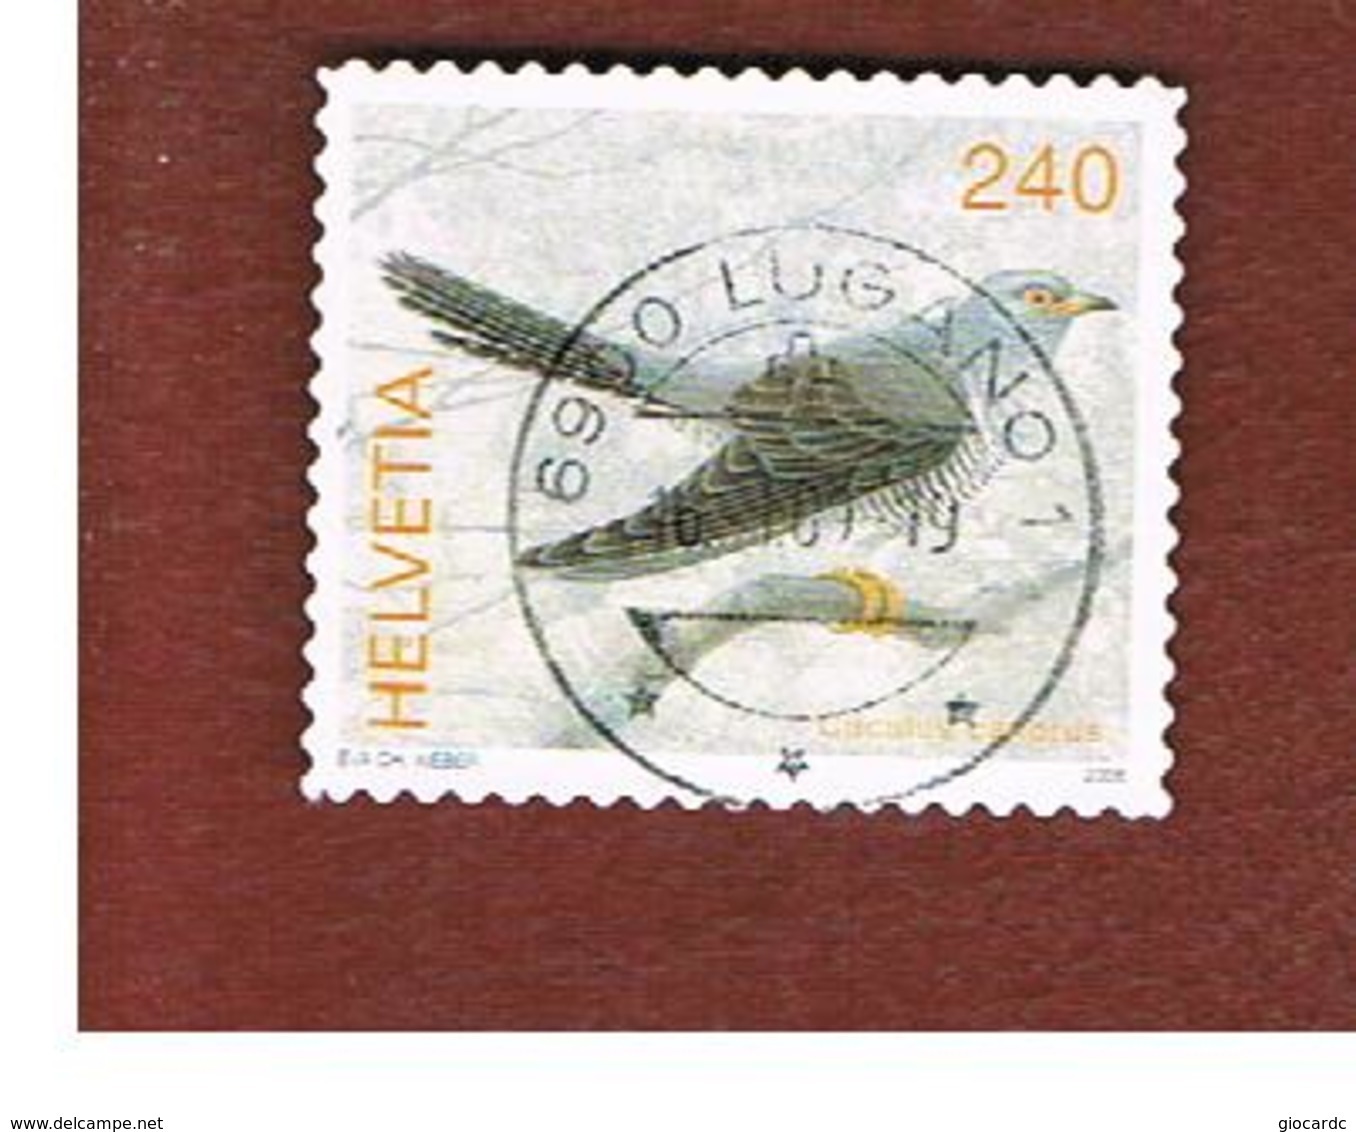 SVIZZERA (SWITZERLAND) -   SG 1669 -    2006   BIRDS: CUCULUS CANORUS - USED - Usati